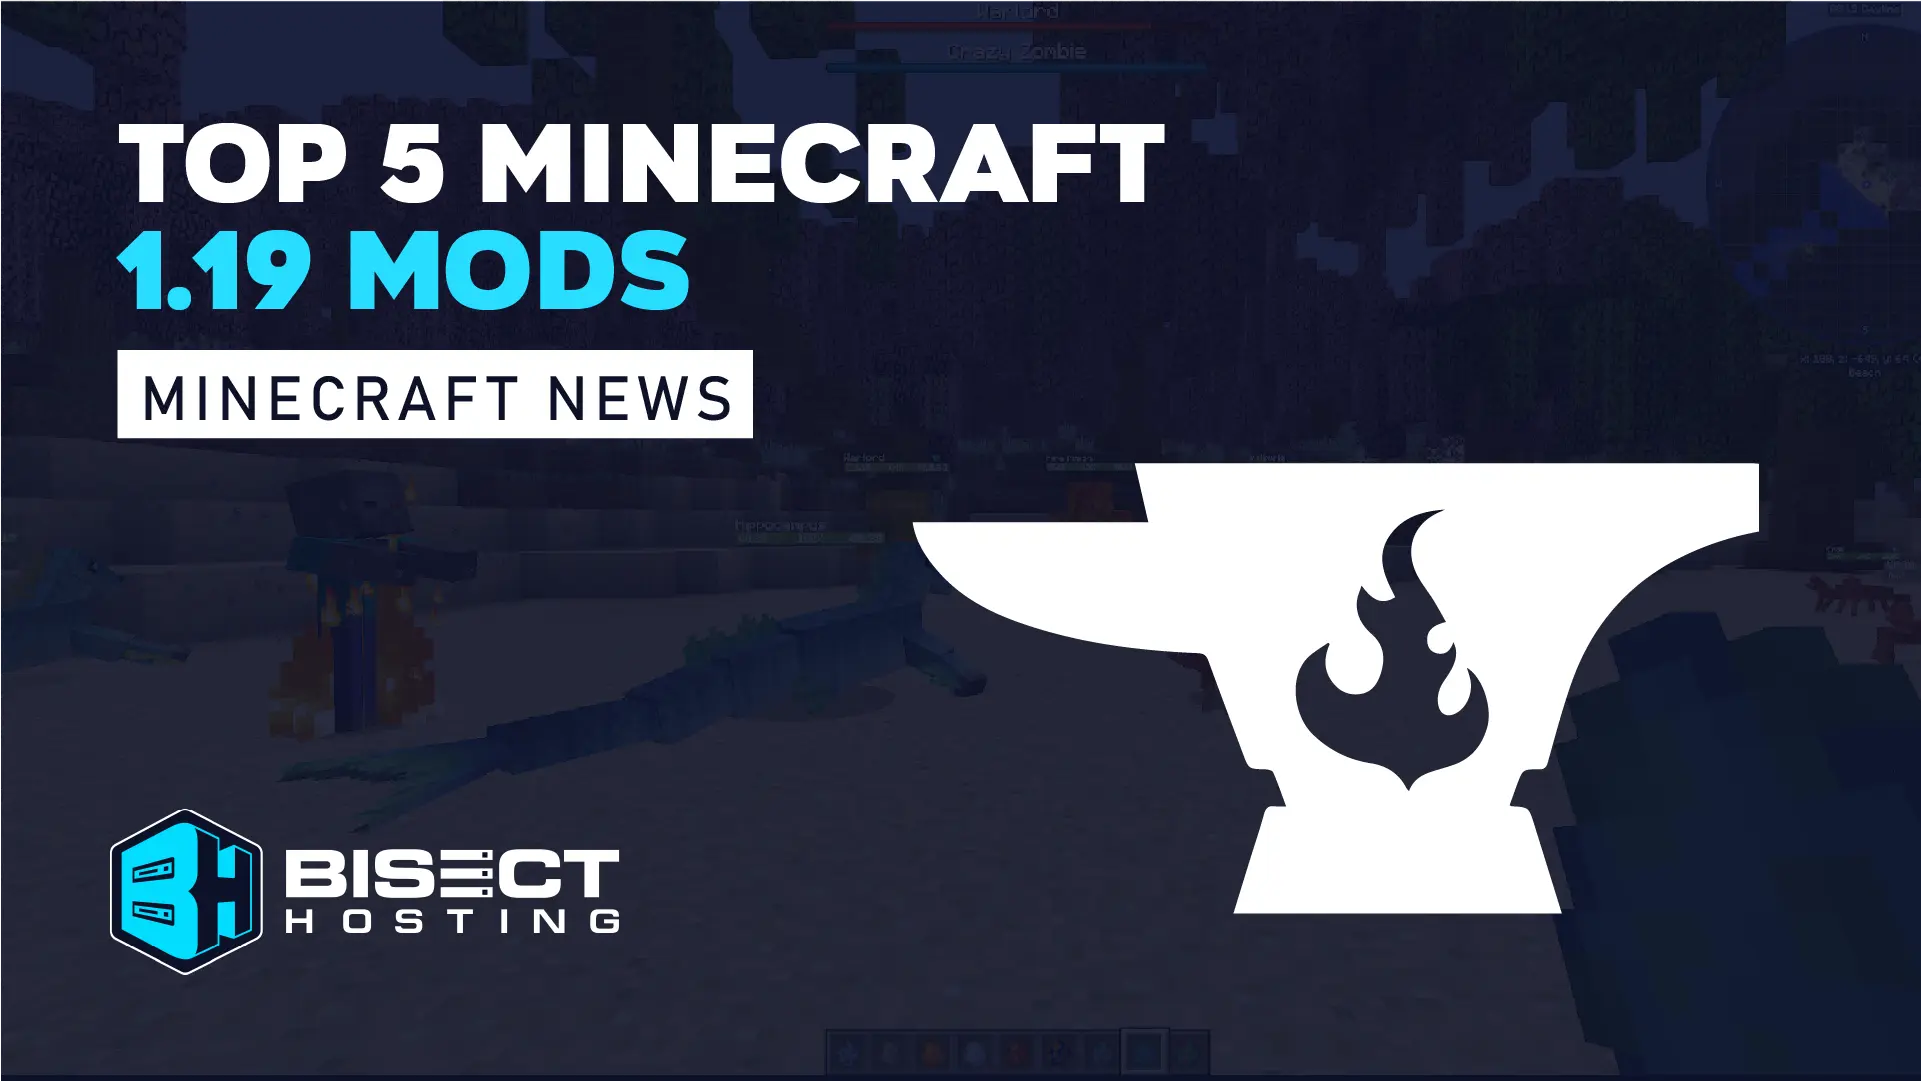 5 best Minecraft 1.19 mods for survival